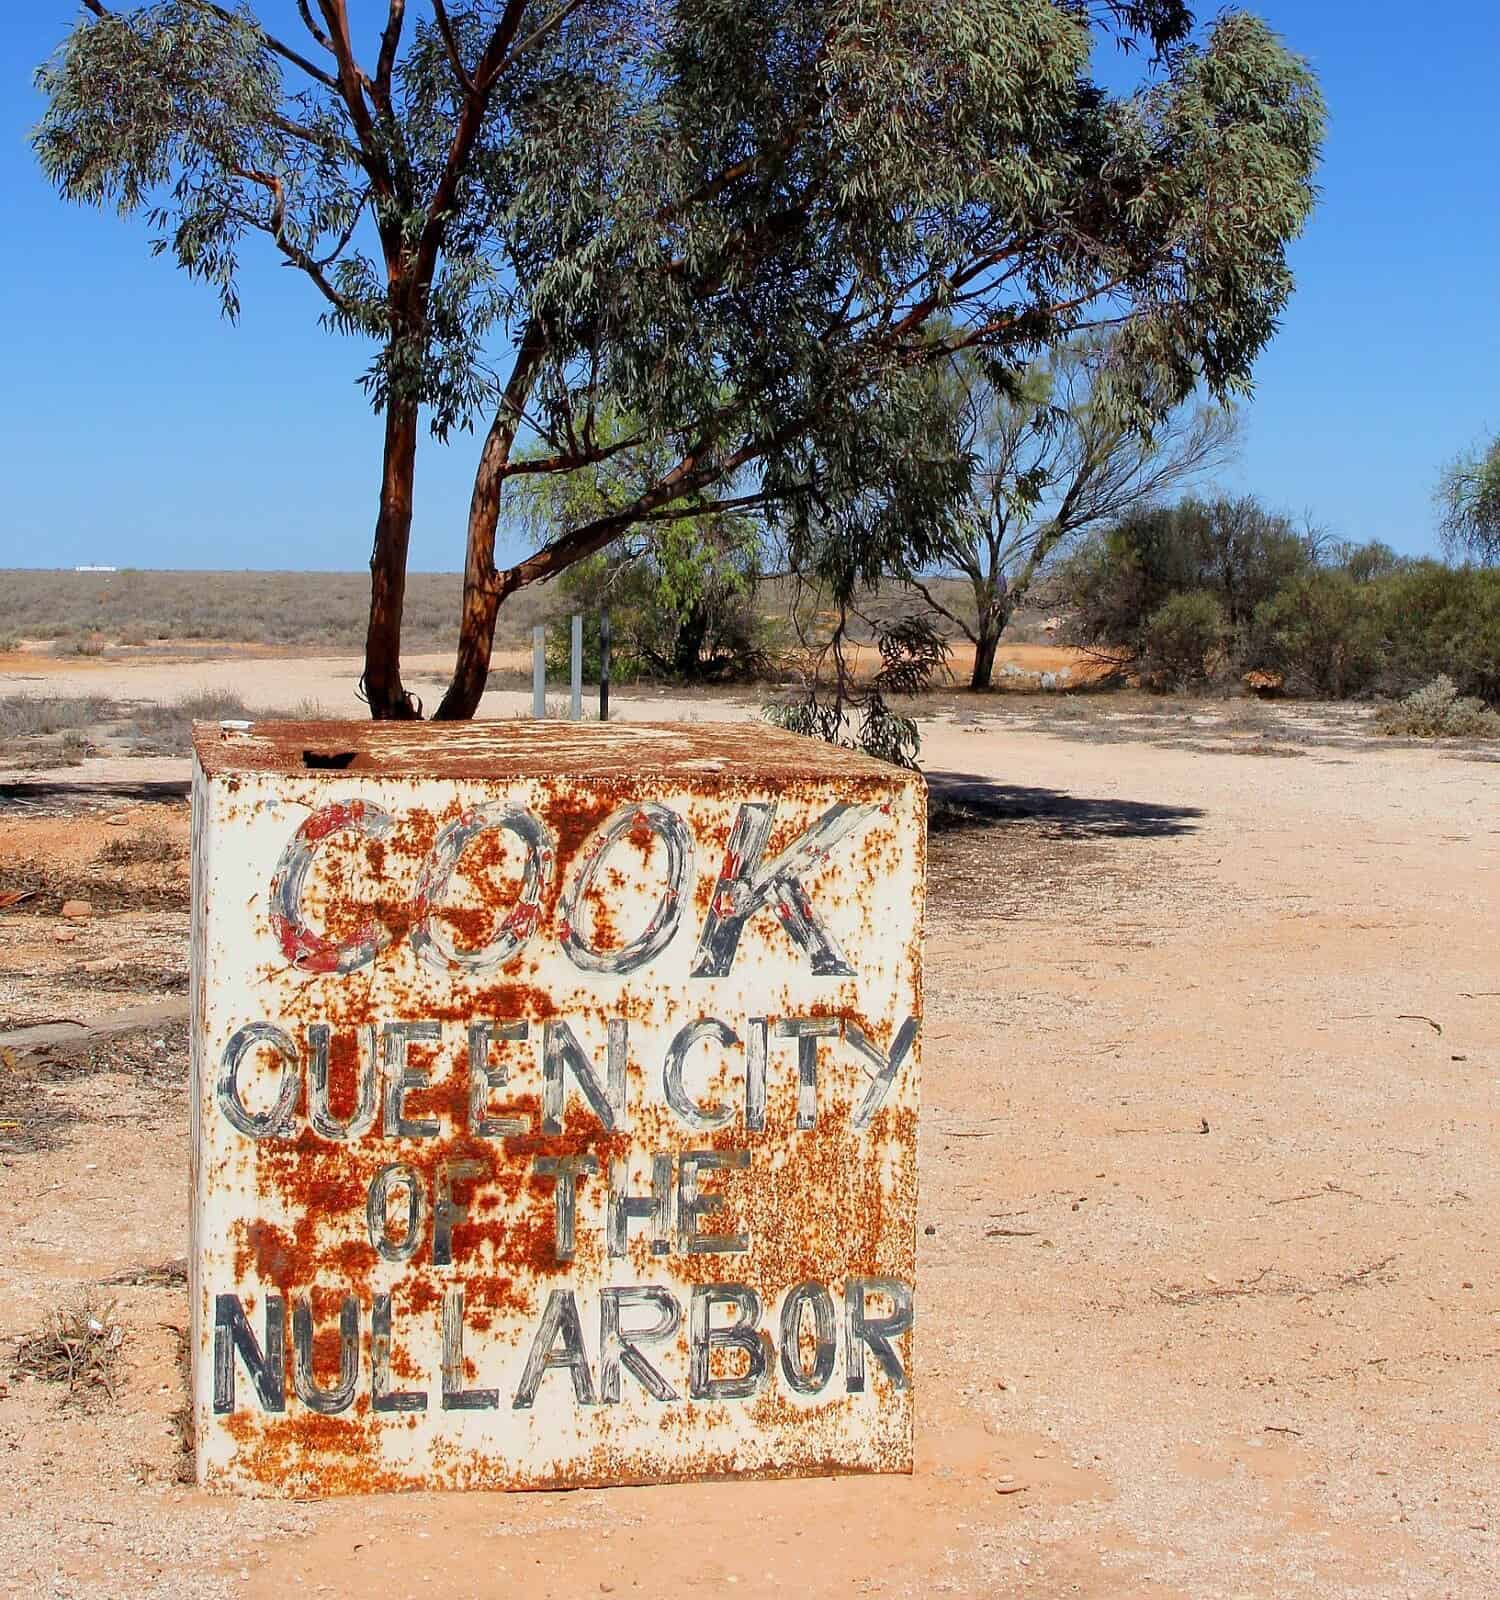 Cartello grungy del villaggio Cook sulla pianura di Nullarbor, Australia.  Il treno dell'Indian Pacific si ferma alla stazione ferroviaria di questa città fantasma dove vivono ancora solo cinque persone. 